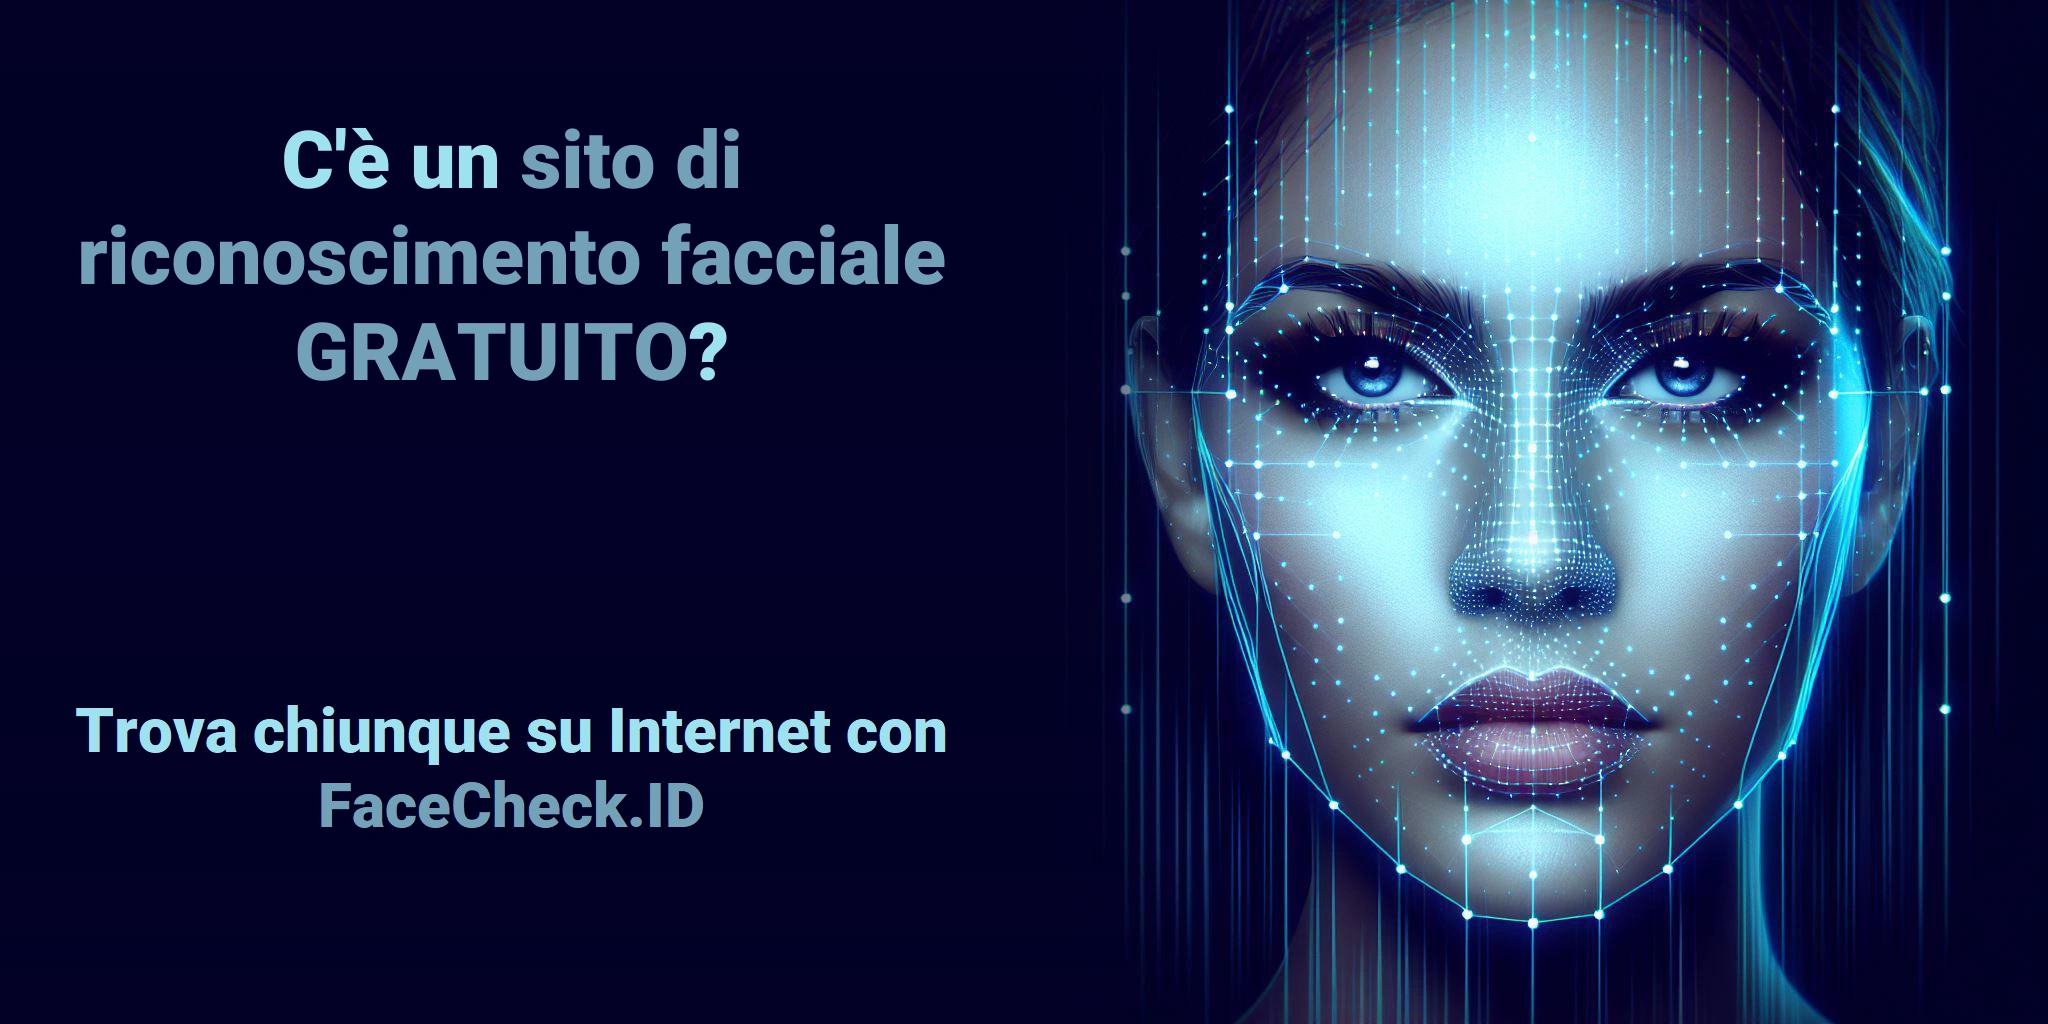 C'è un sito di riconoscimento facciale GRATUITO? Trova chiunque su Internet con FaceCheck.ID